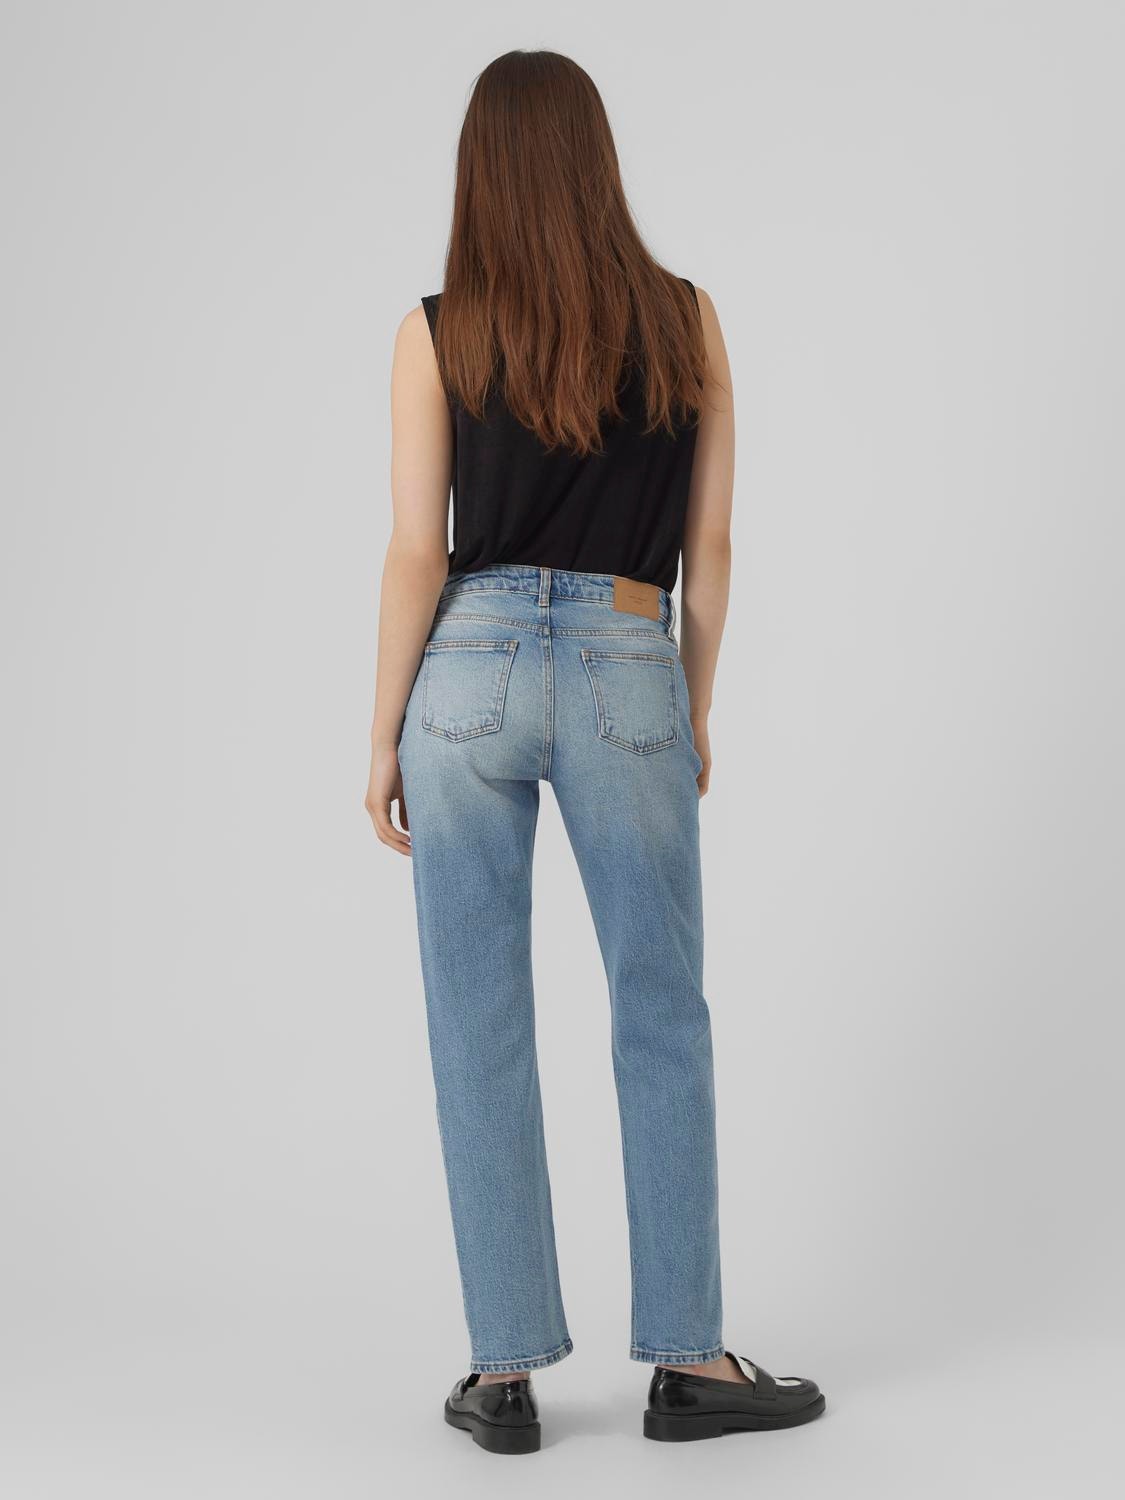 Vero Moda VMCAMERON Låg midja Rak passform Jeans -Light Blue Denim - 10306054